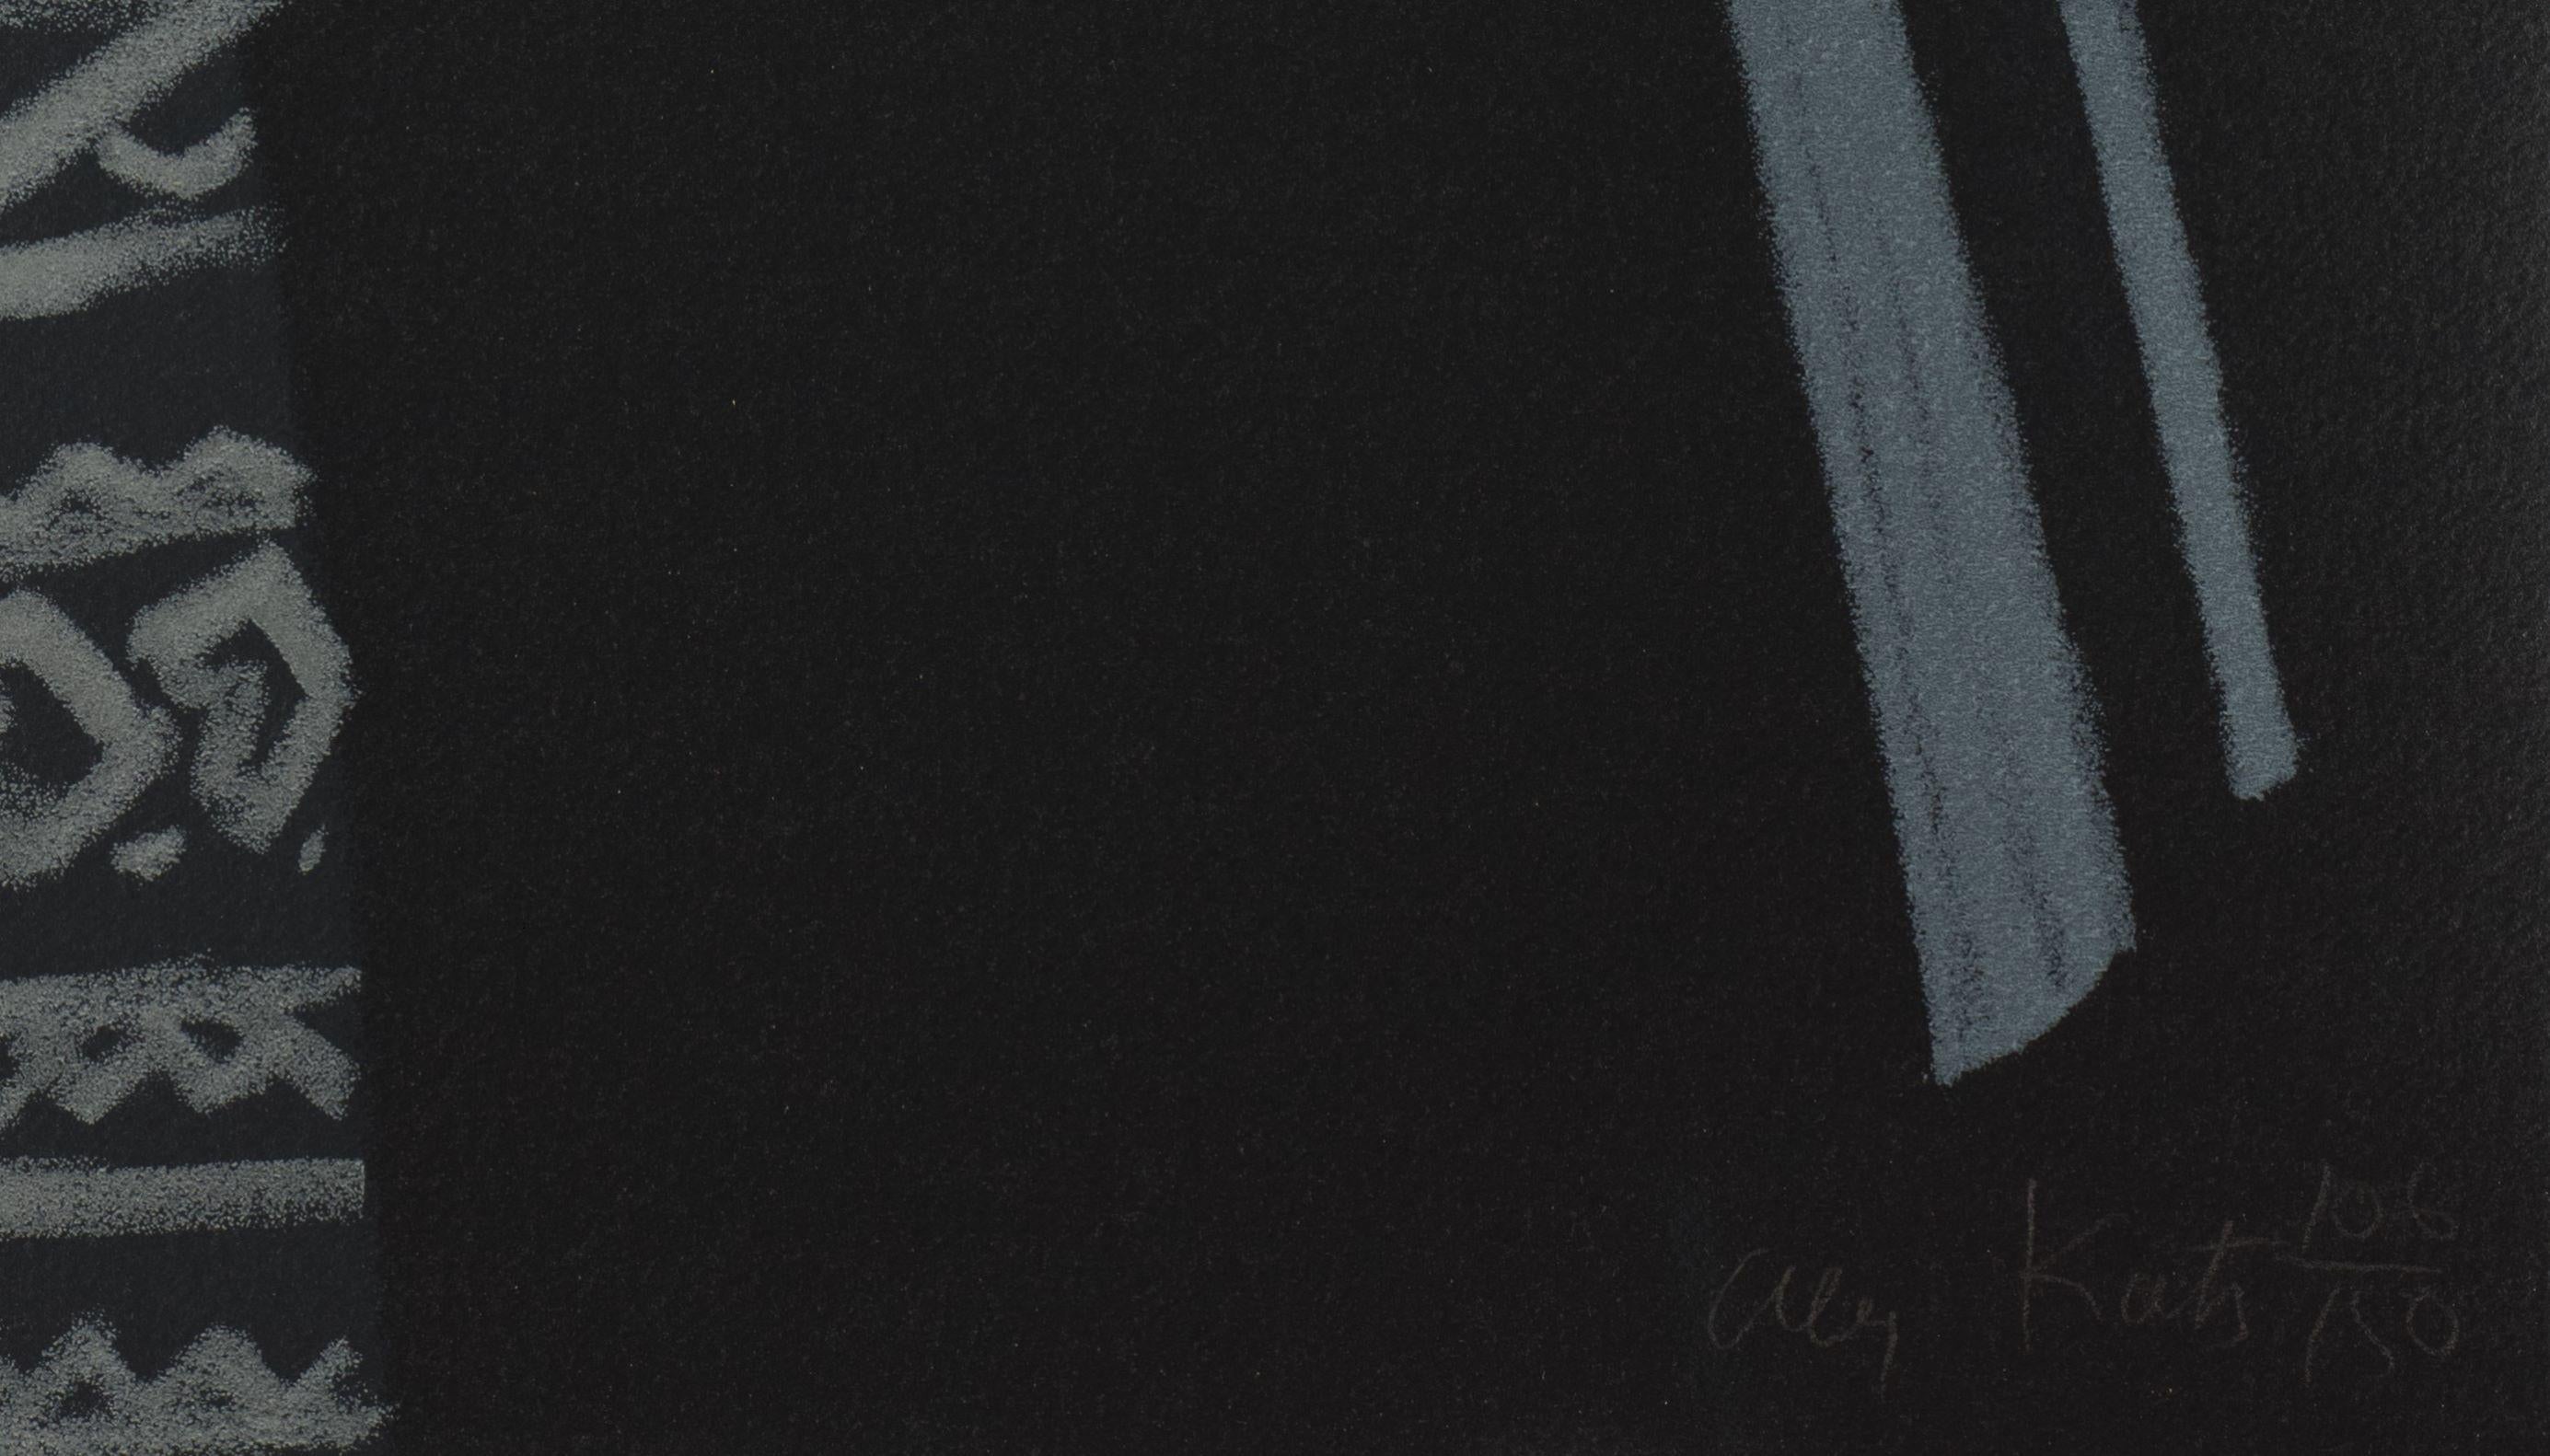 Pas de Deux IV (Vicki Hudspith und Wally Turbeville) ist eine Serigrafie auf Papier mit einer Bildgröße von 36 x 20 Zoll, signiert 